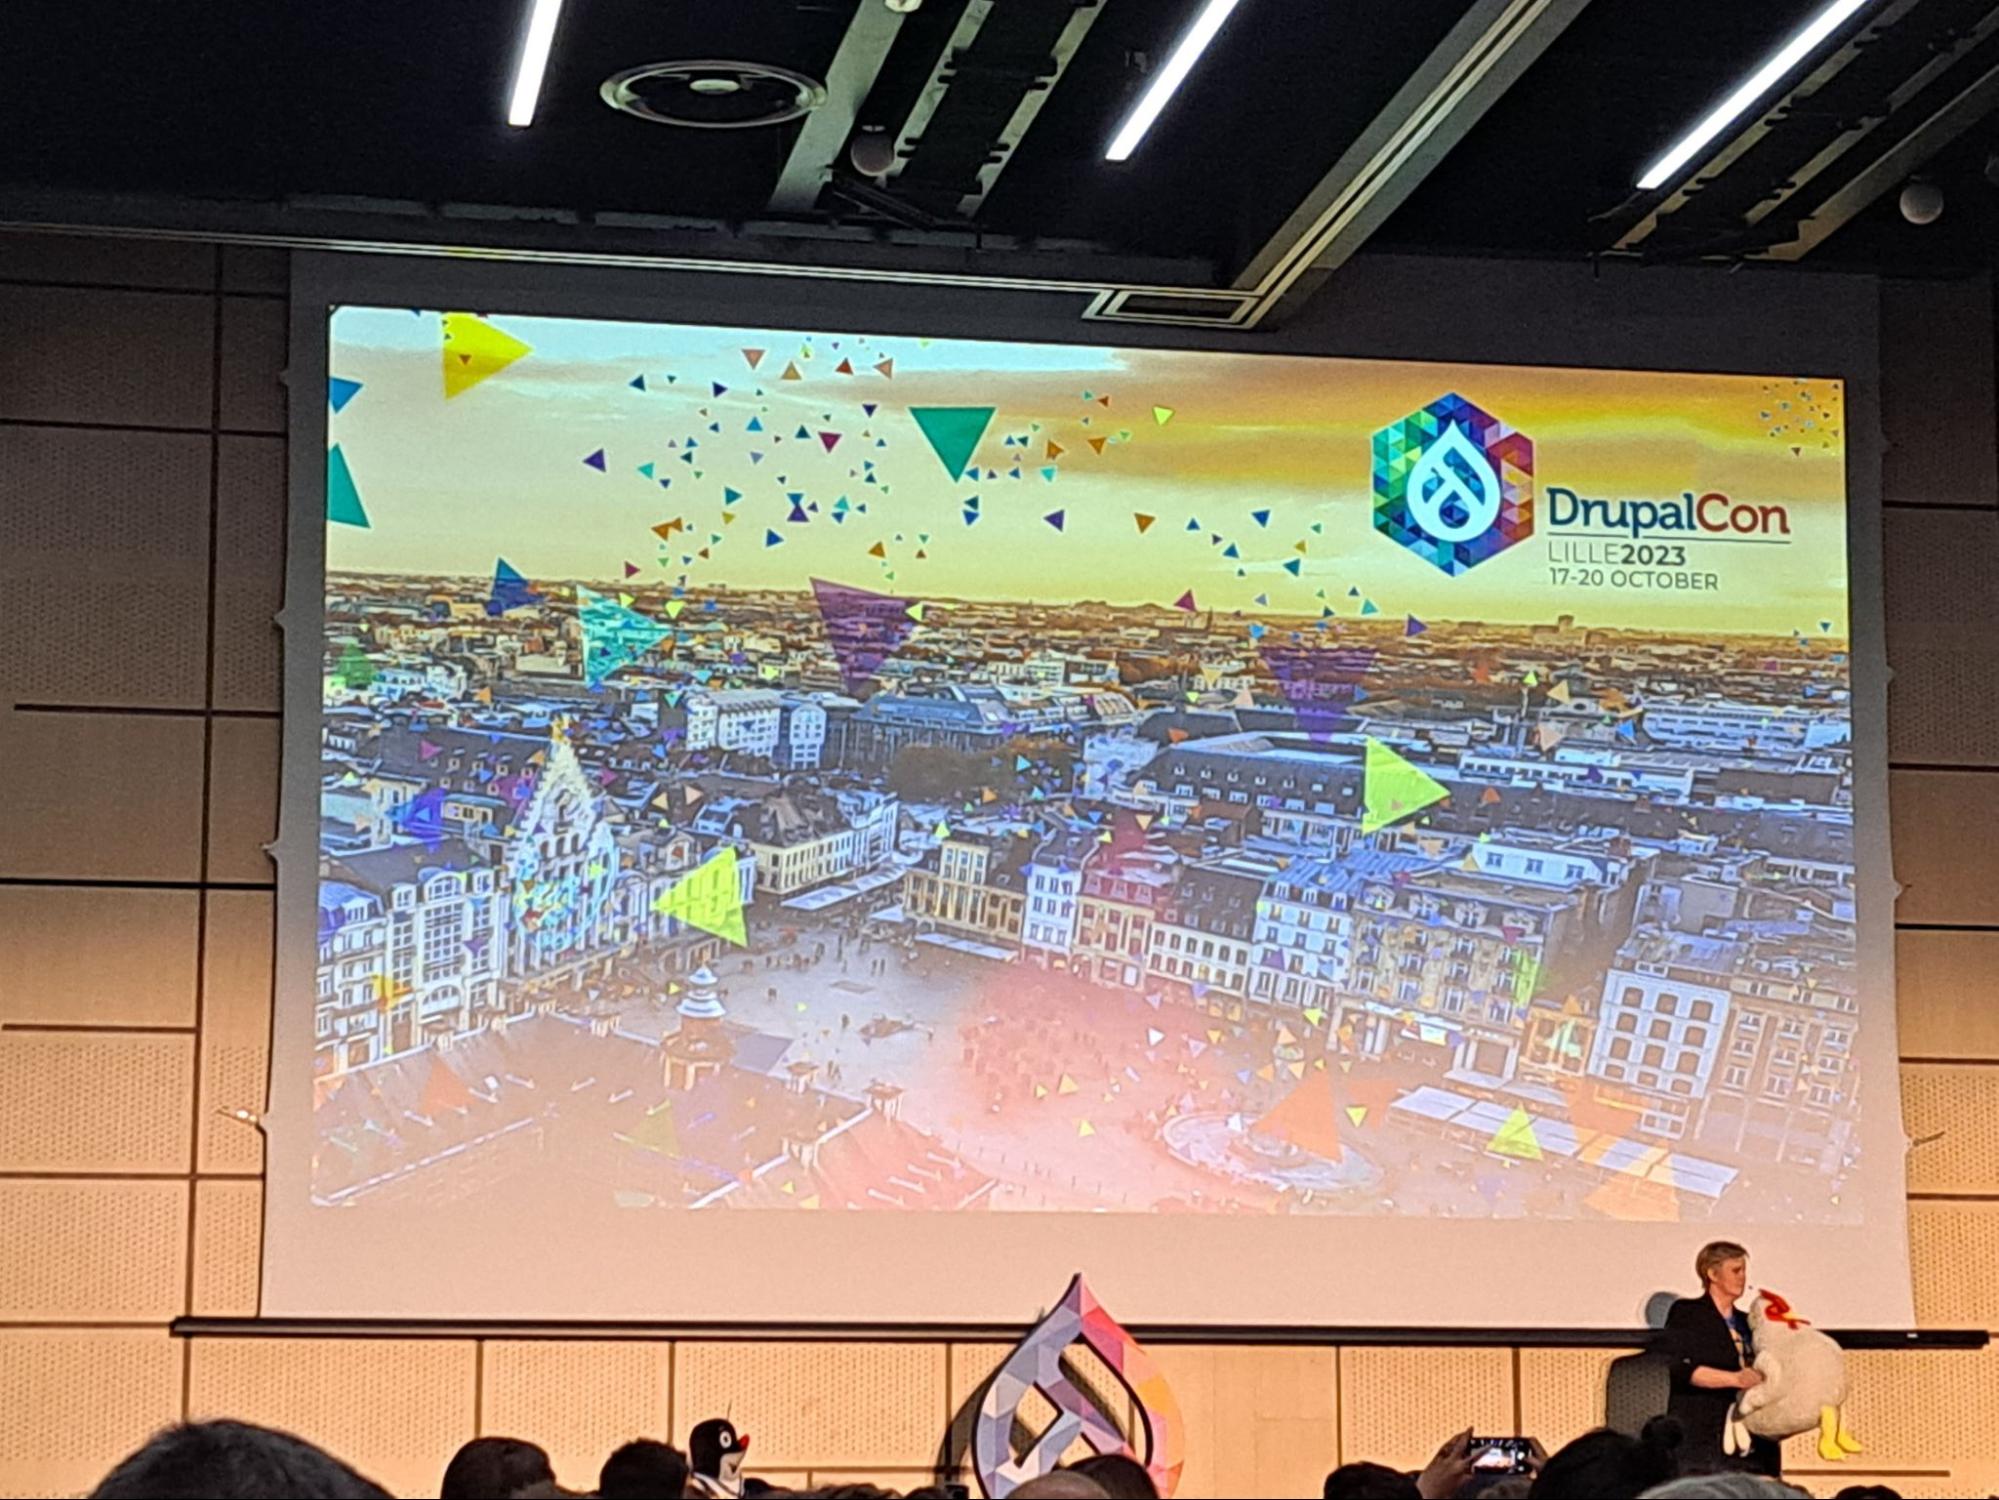 The next DrupalCon Europe city announcement